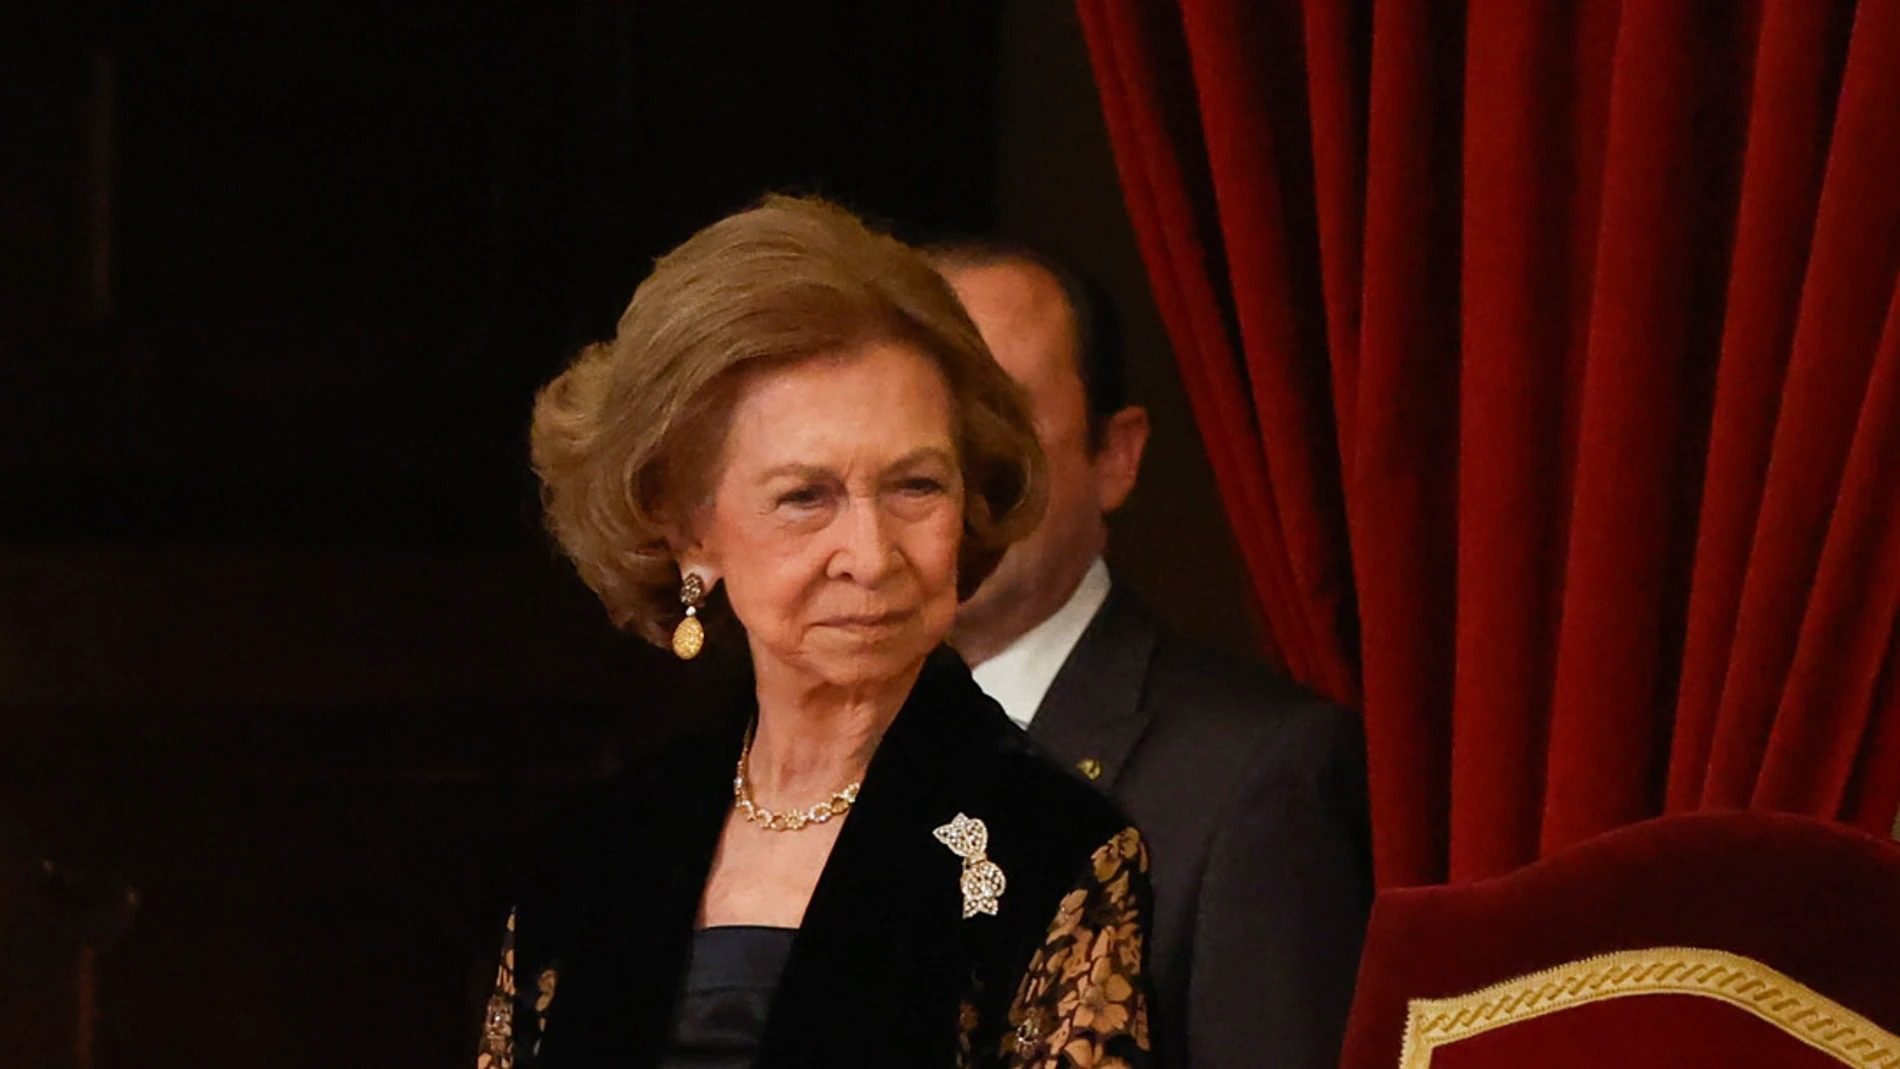 La reina Sofía esconde un problema grave con el alcohol en el núcleo duro de la familia real